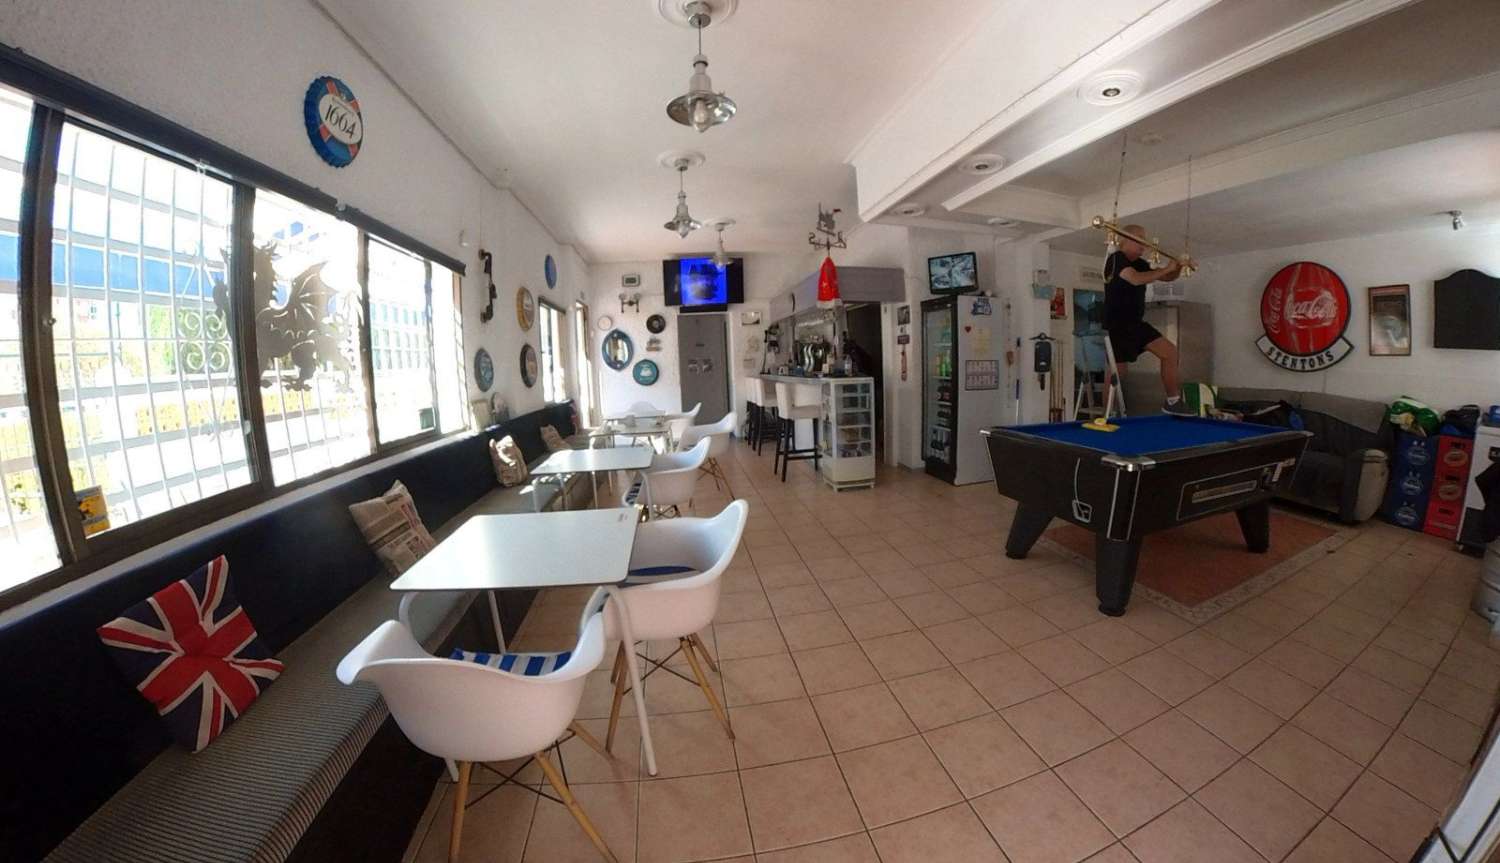 Cafe Bar for transfer in Arroyo de la Miel (Benalmádena)